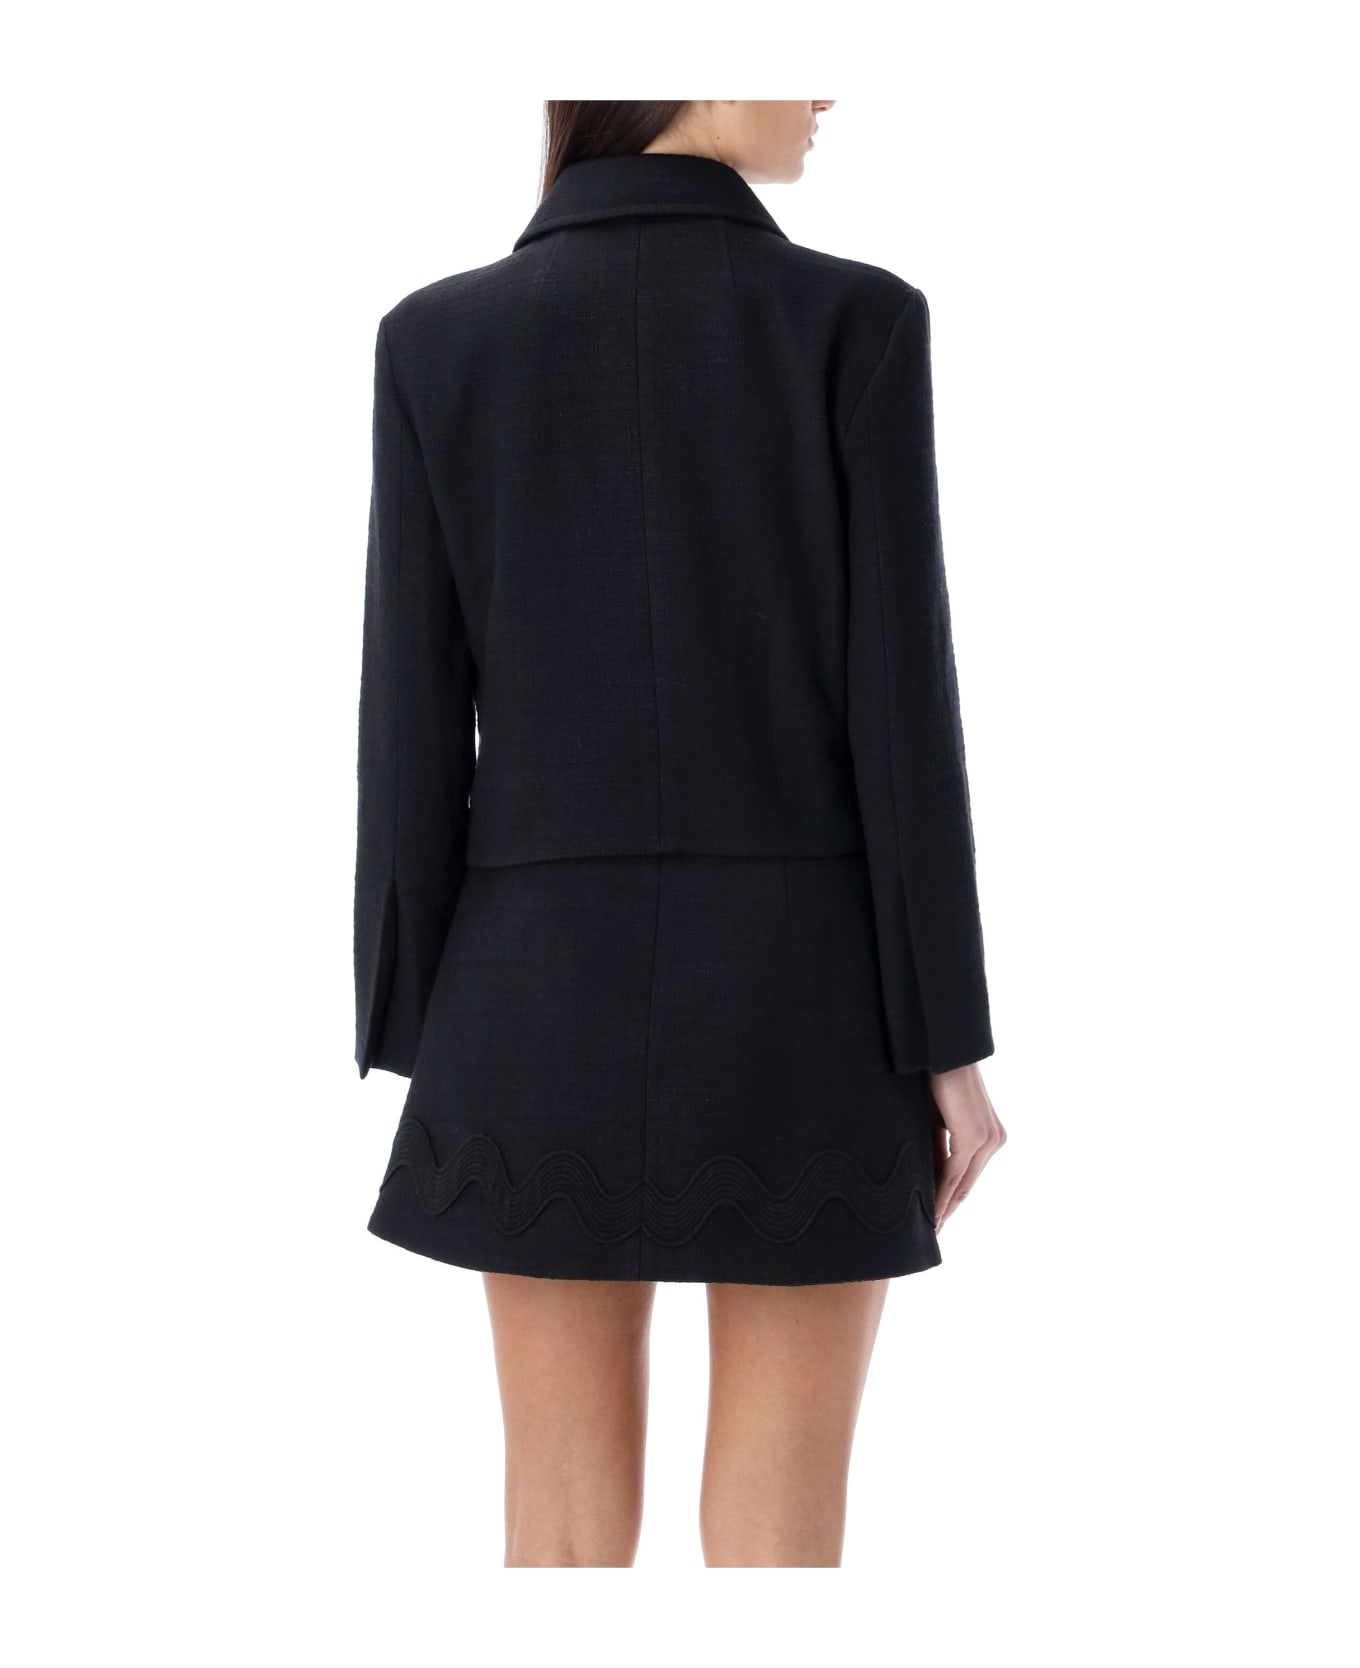 Patou Tweed Short Jacket - BLACK ブレザー